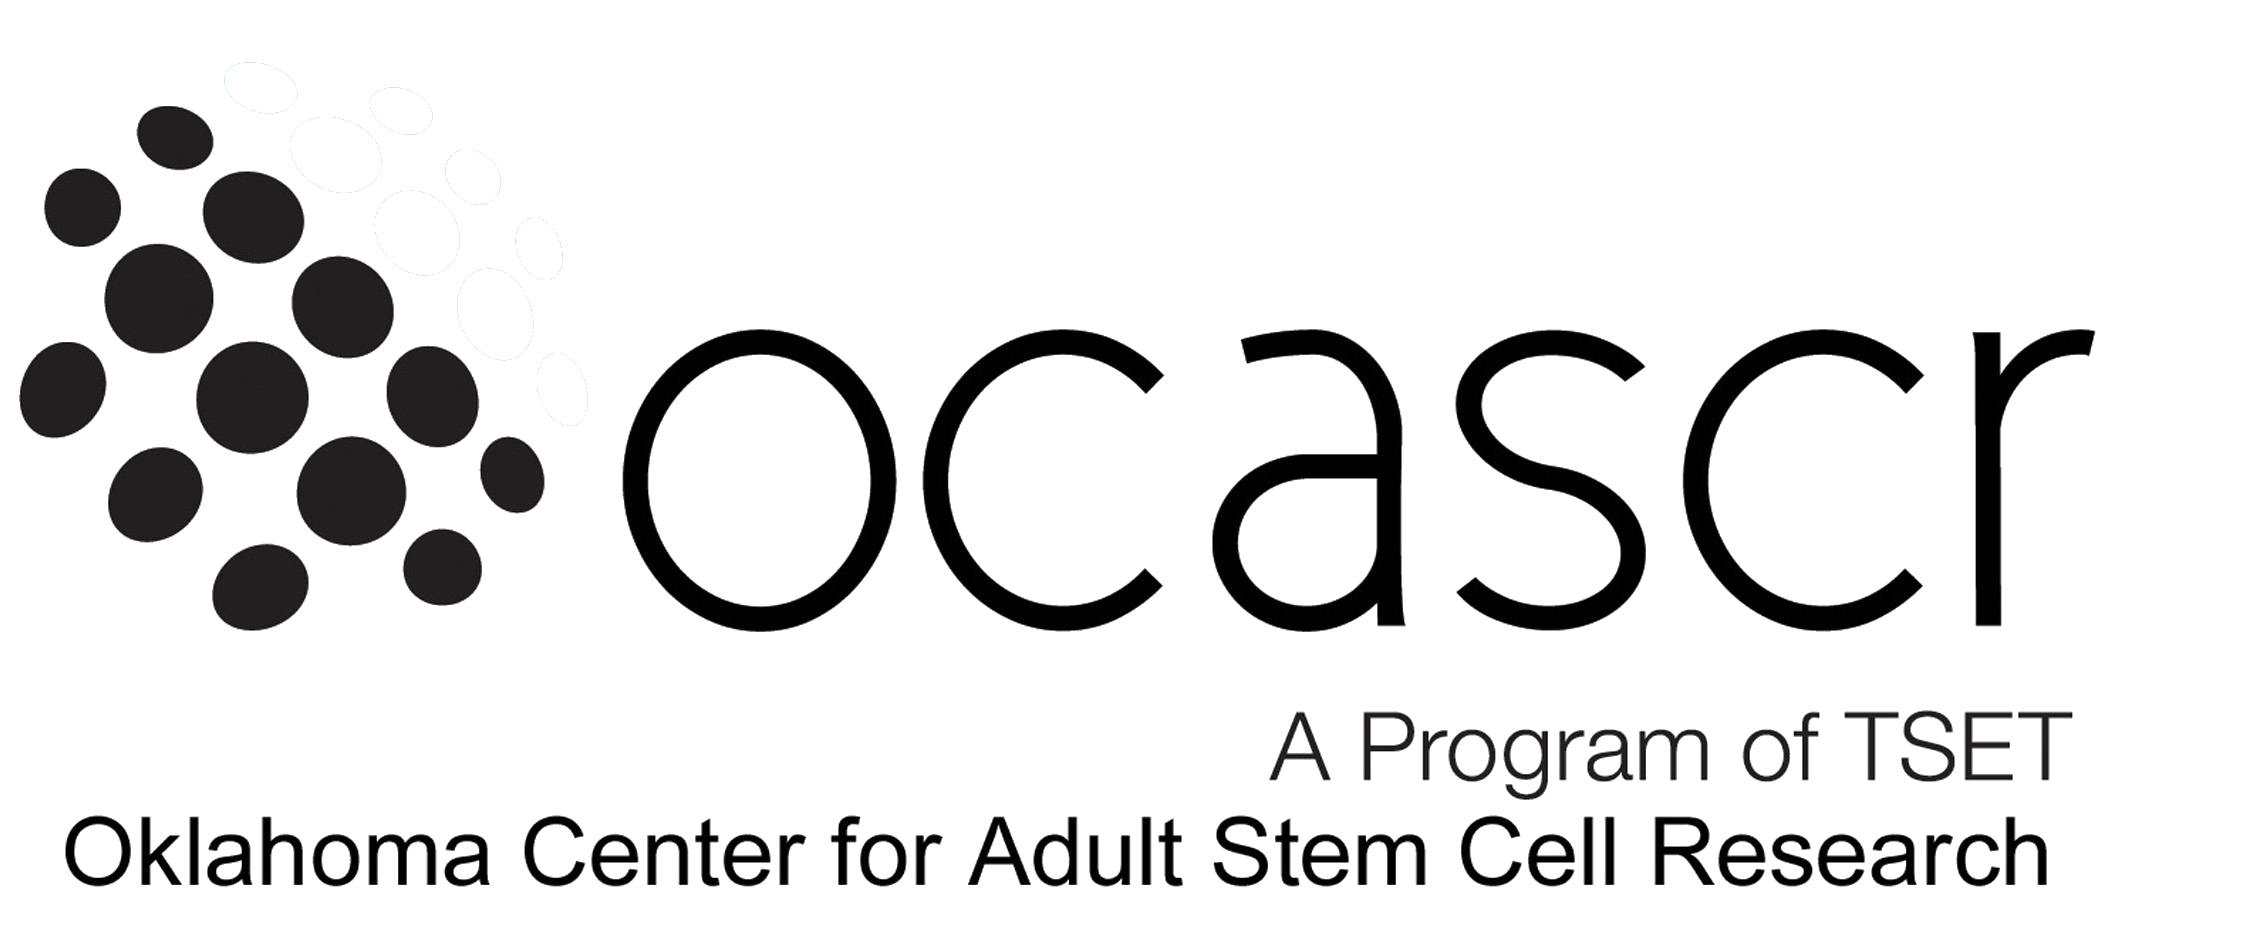 OCASCR Logo